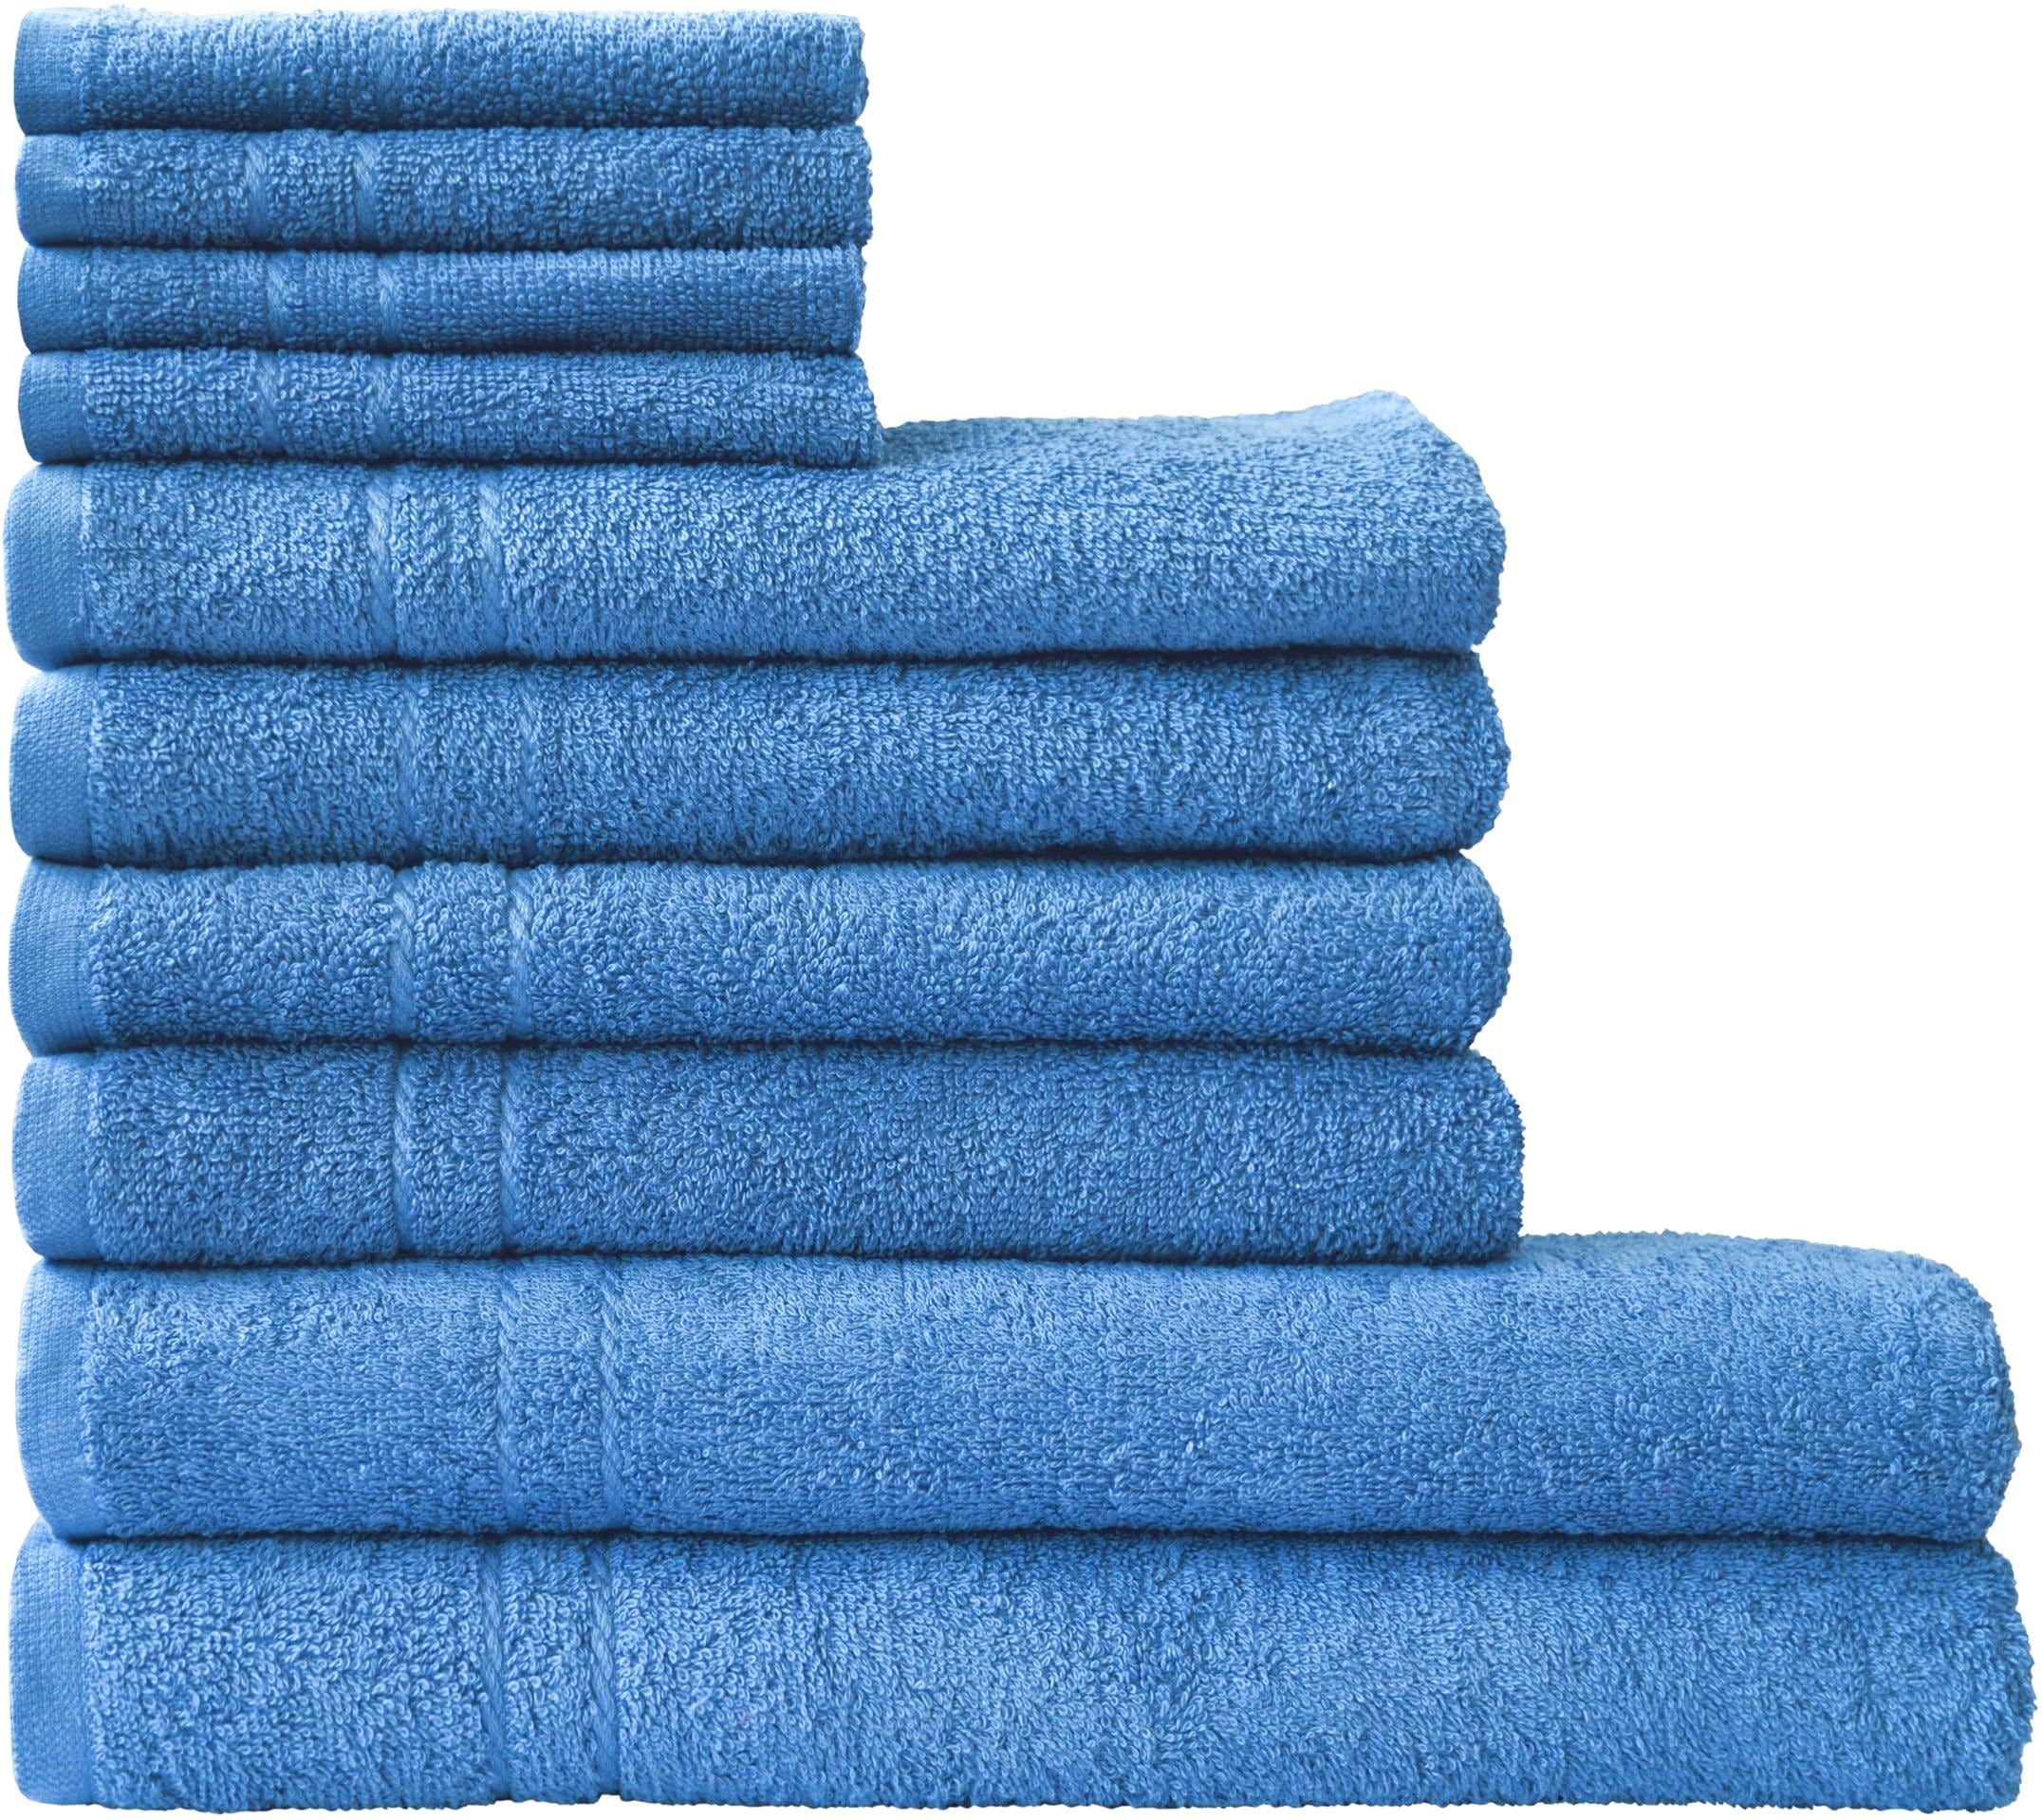 kaufen bei liefern Handtuch-Sets online Wir – Quelle